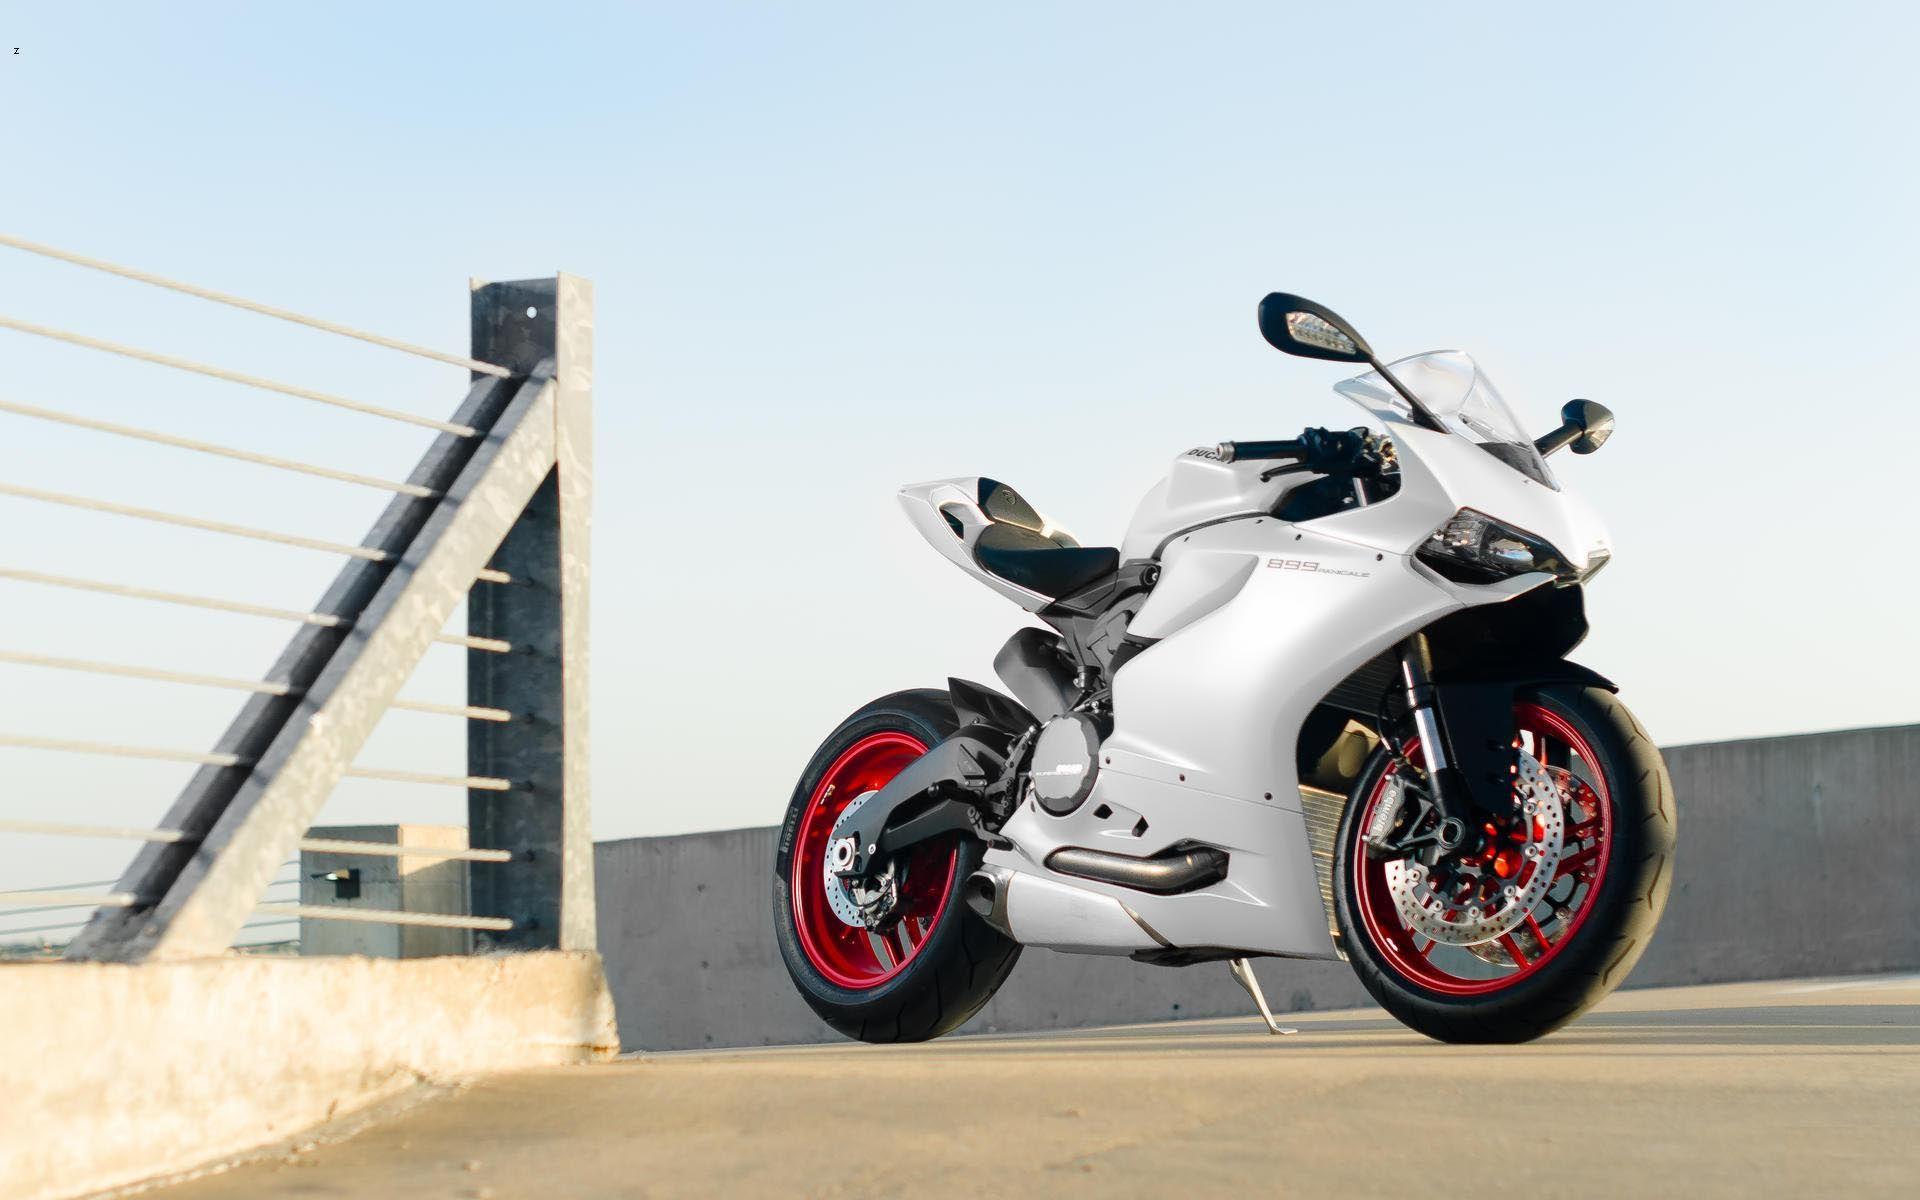 Ducati Bikes Wallpaper Free Download & Monster Bike Image